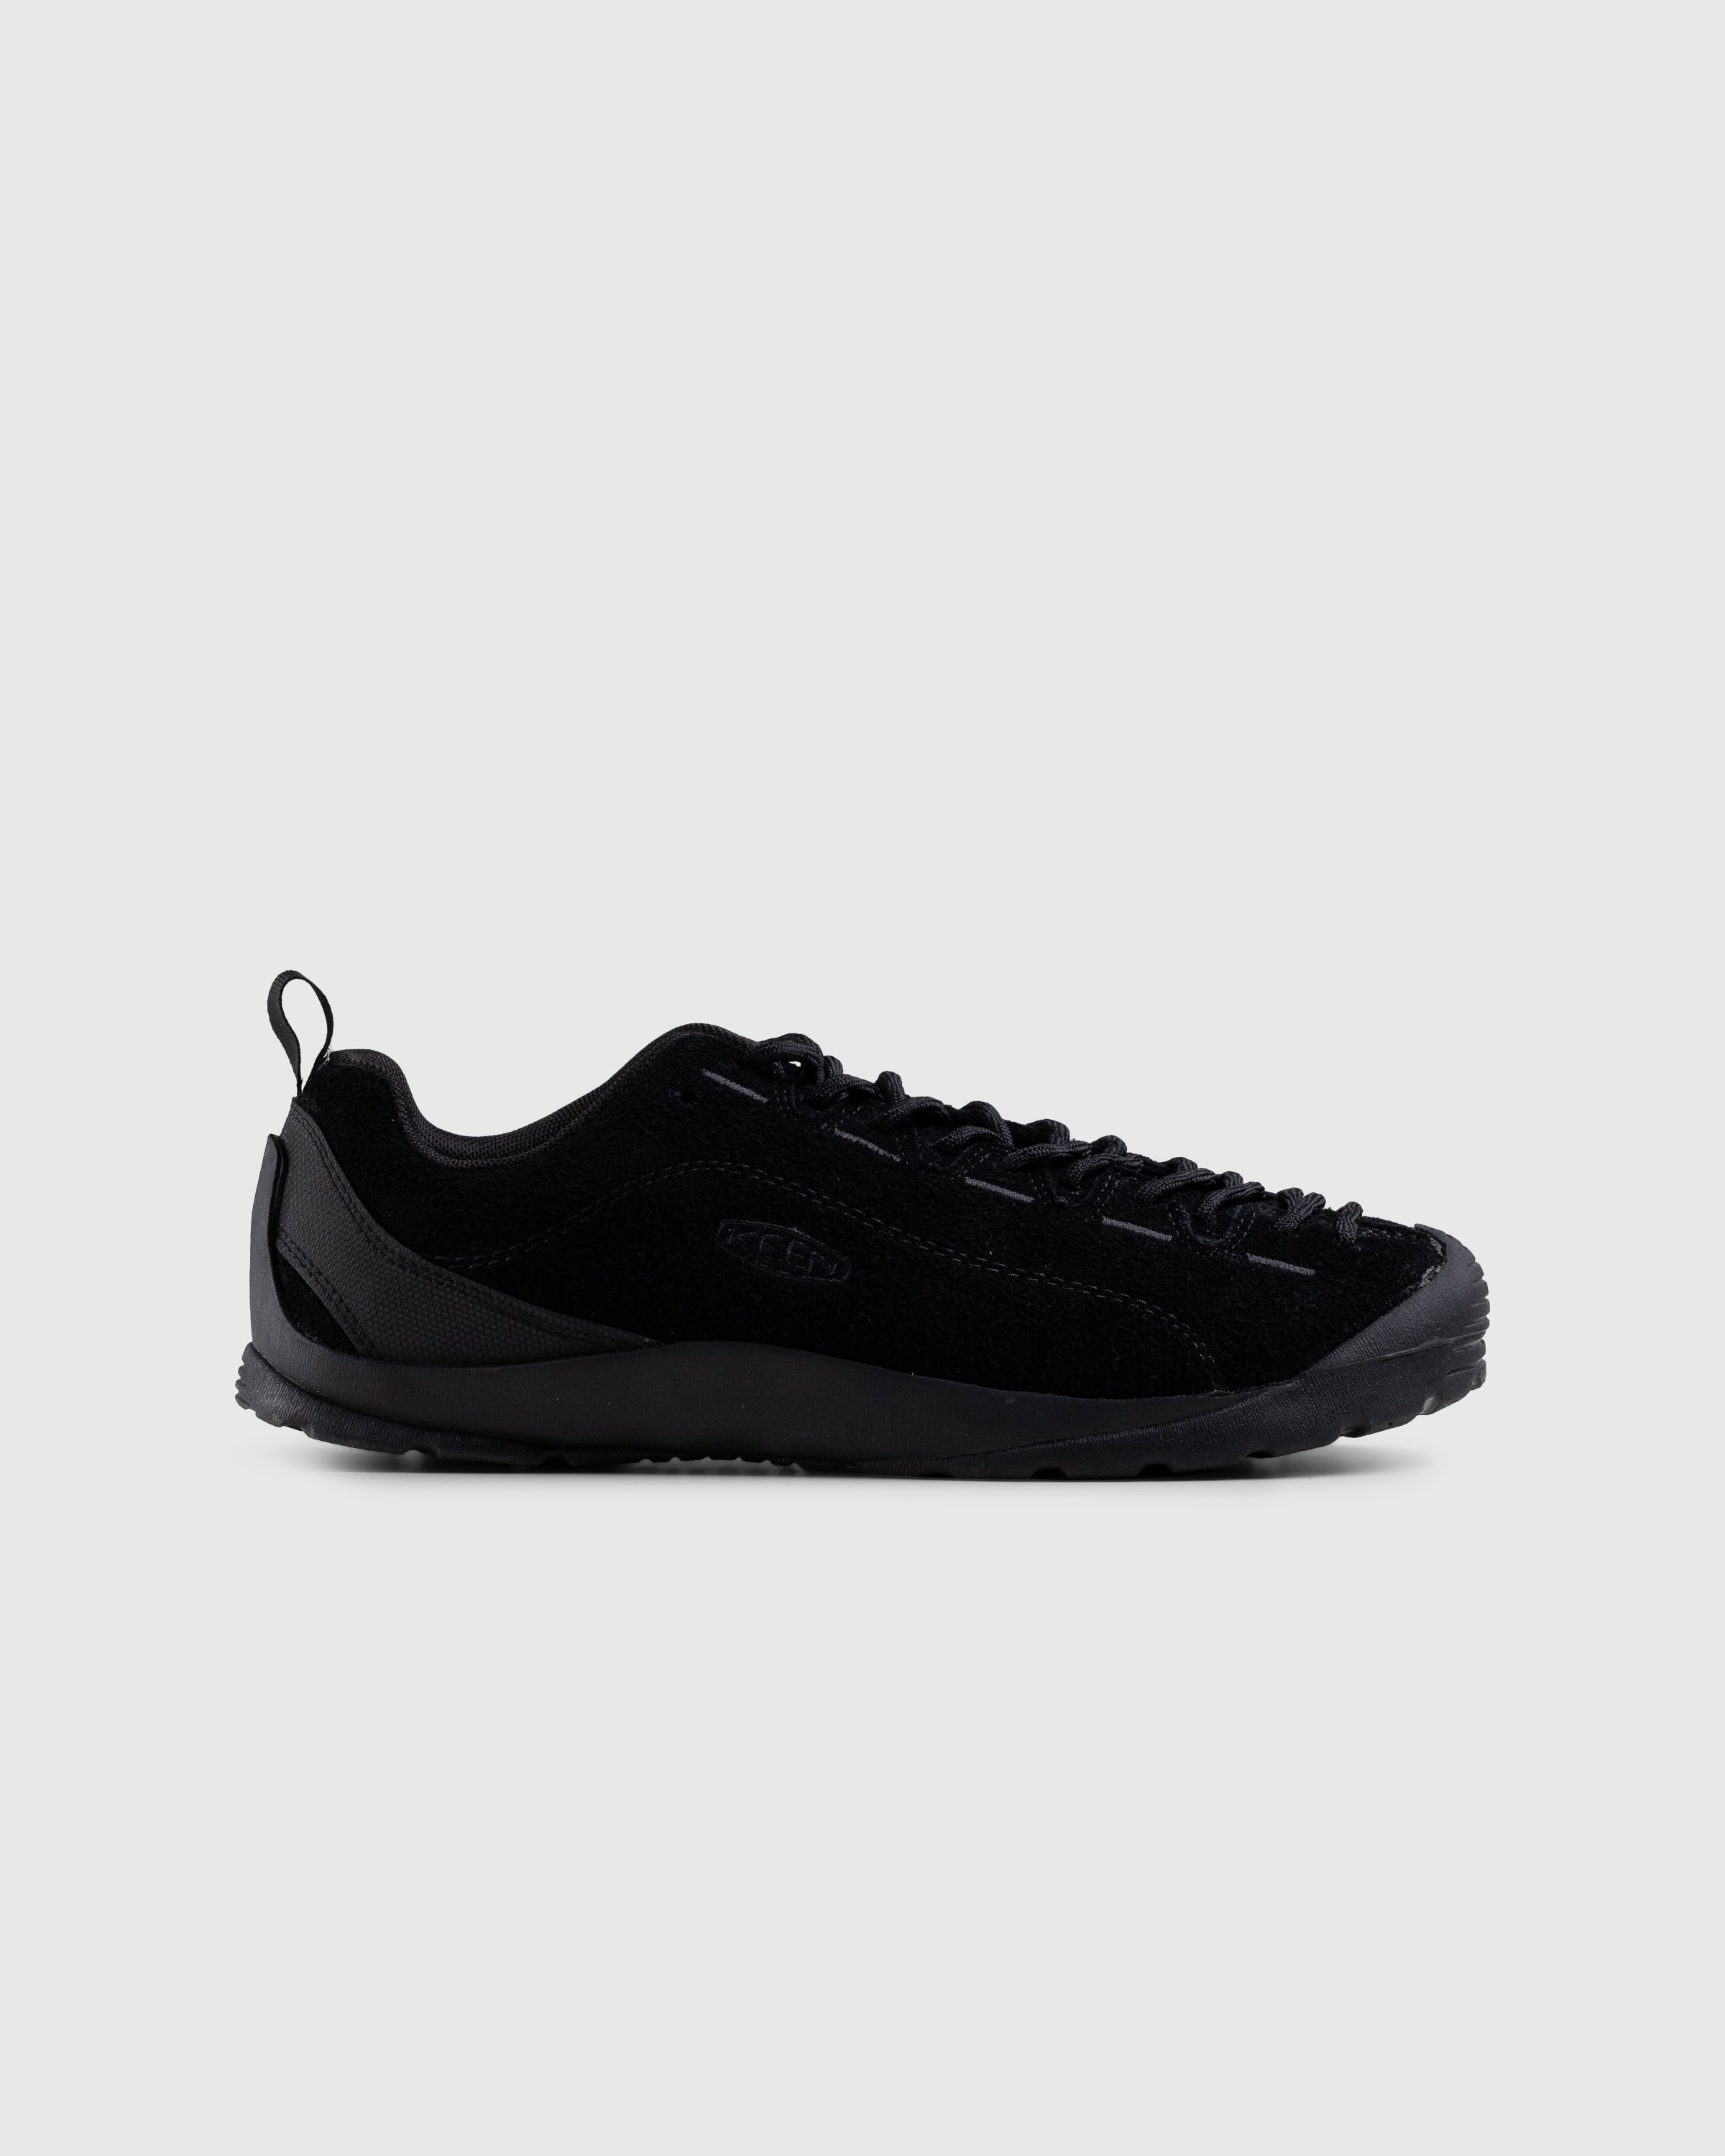 Keen – Jasper Black - Low Top Sneakers - Black - Image 1